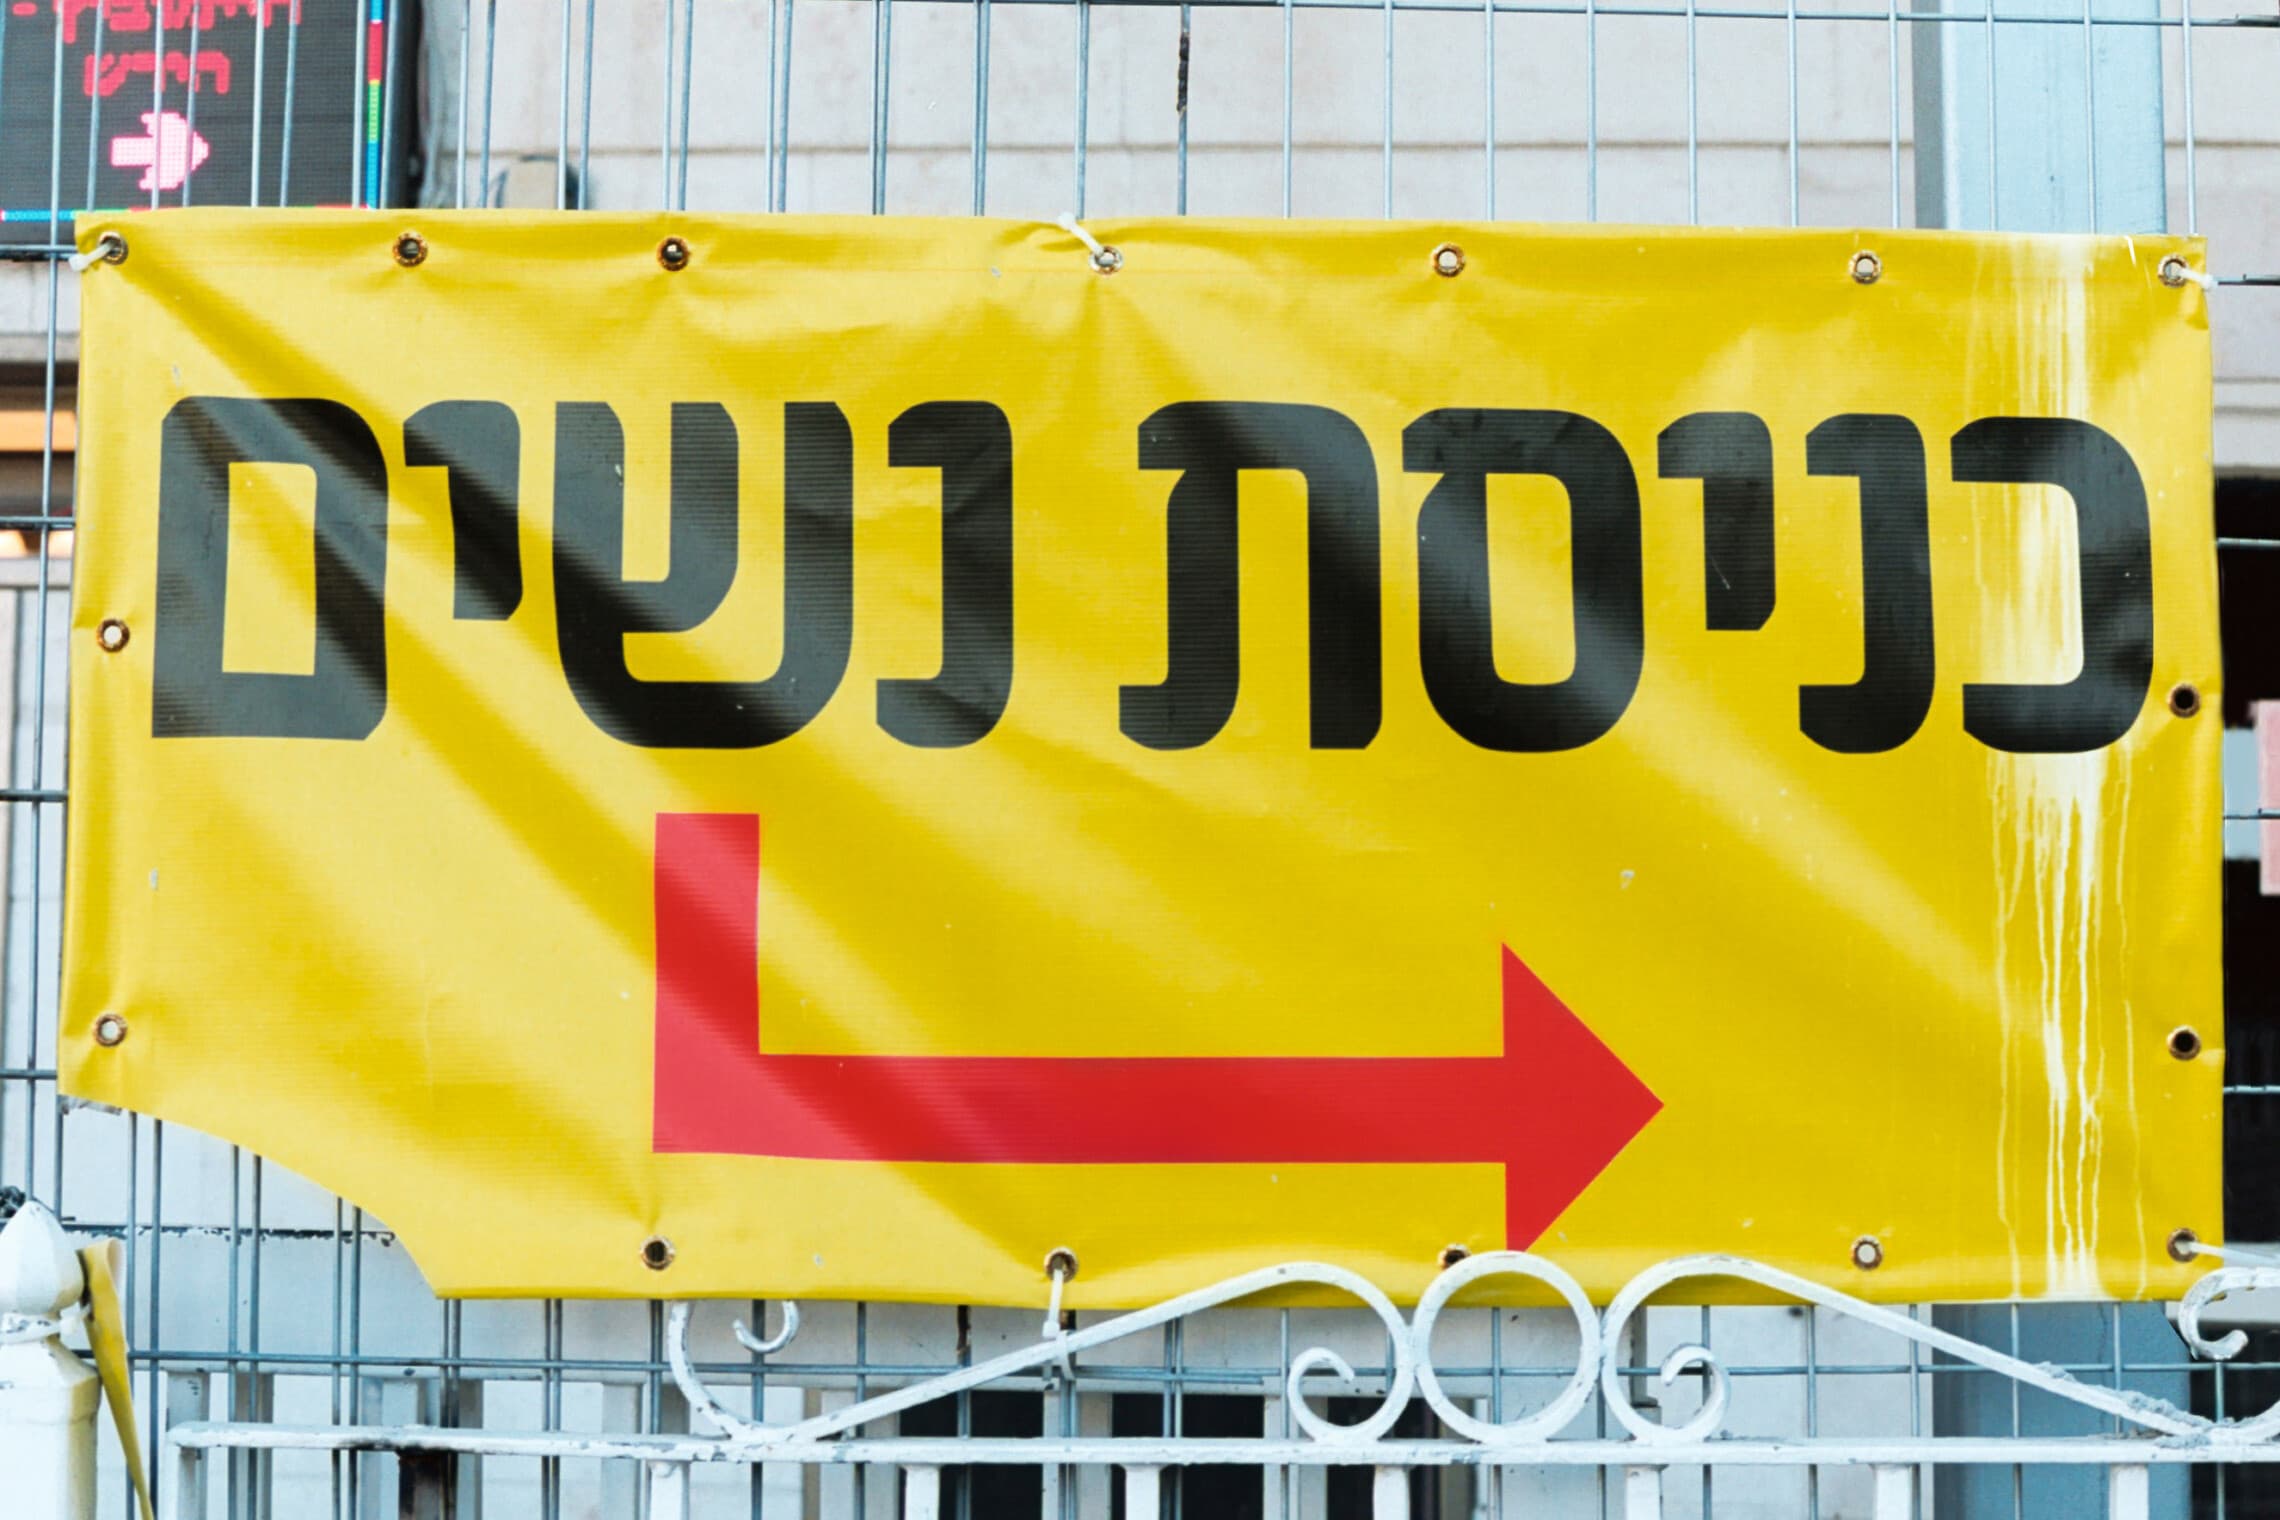 צולם ברחוב חשמונאים בתל אביב (צילום: אלכס פרפורי)